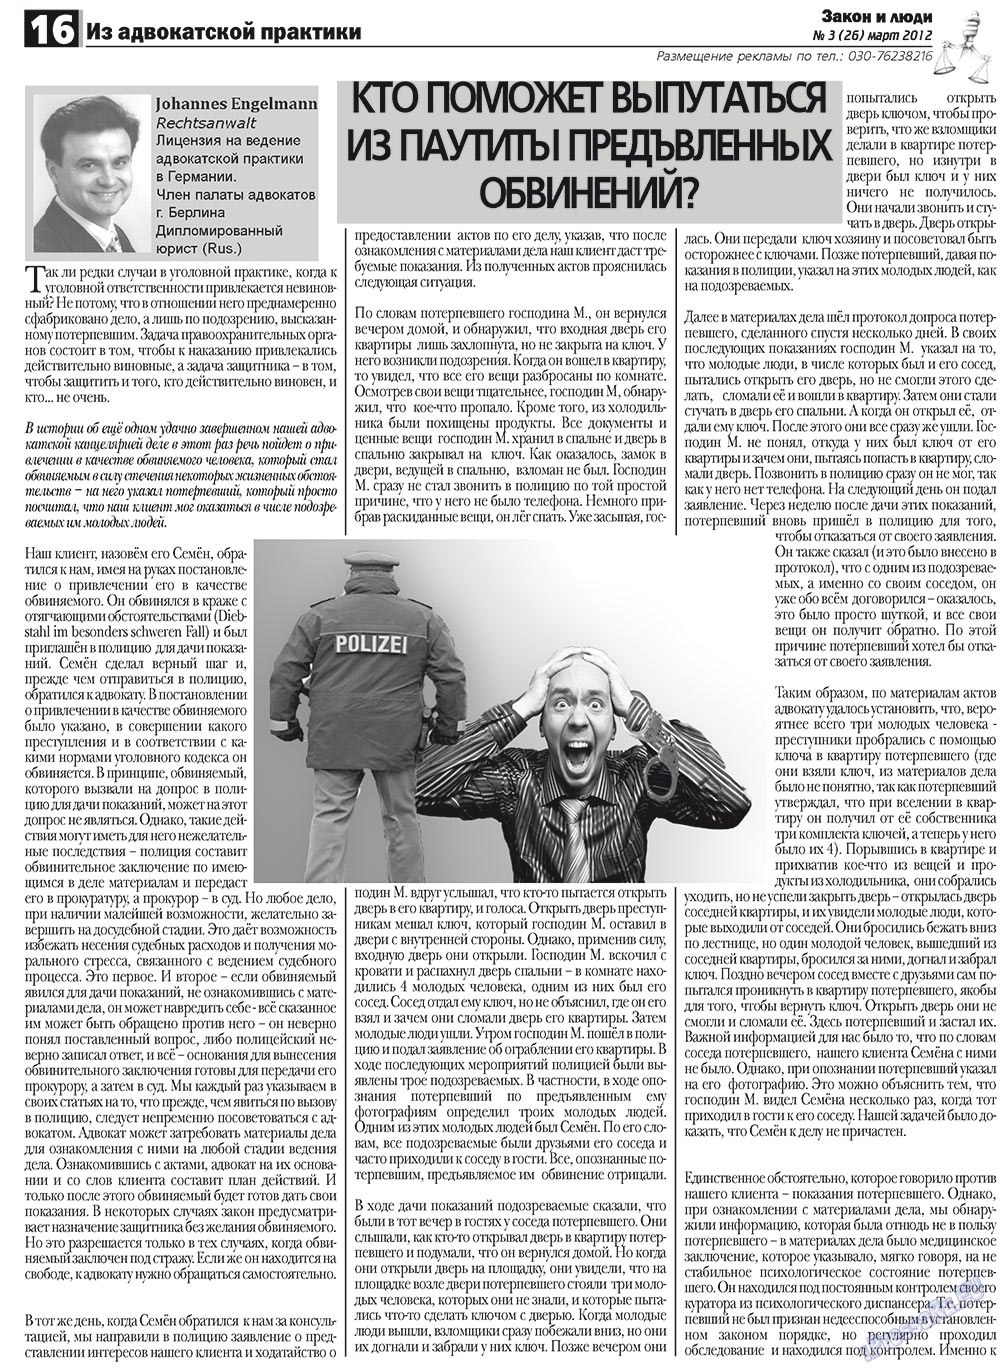 Закон и люди, газета. 2012 №3 стр.16